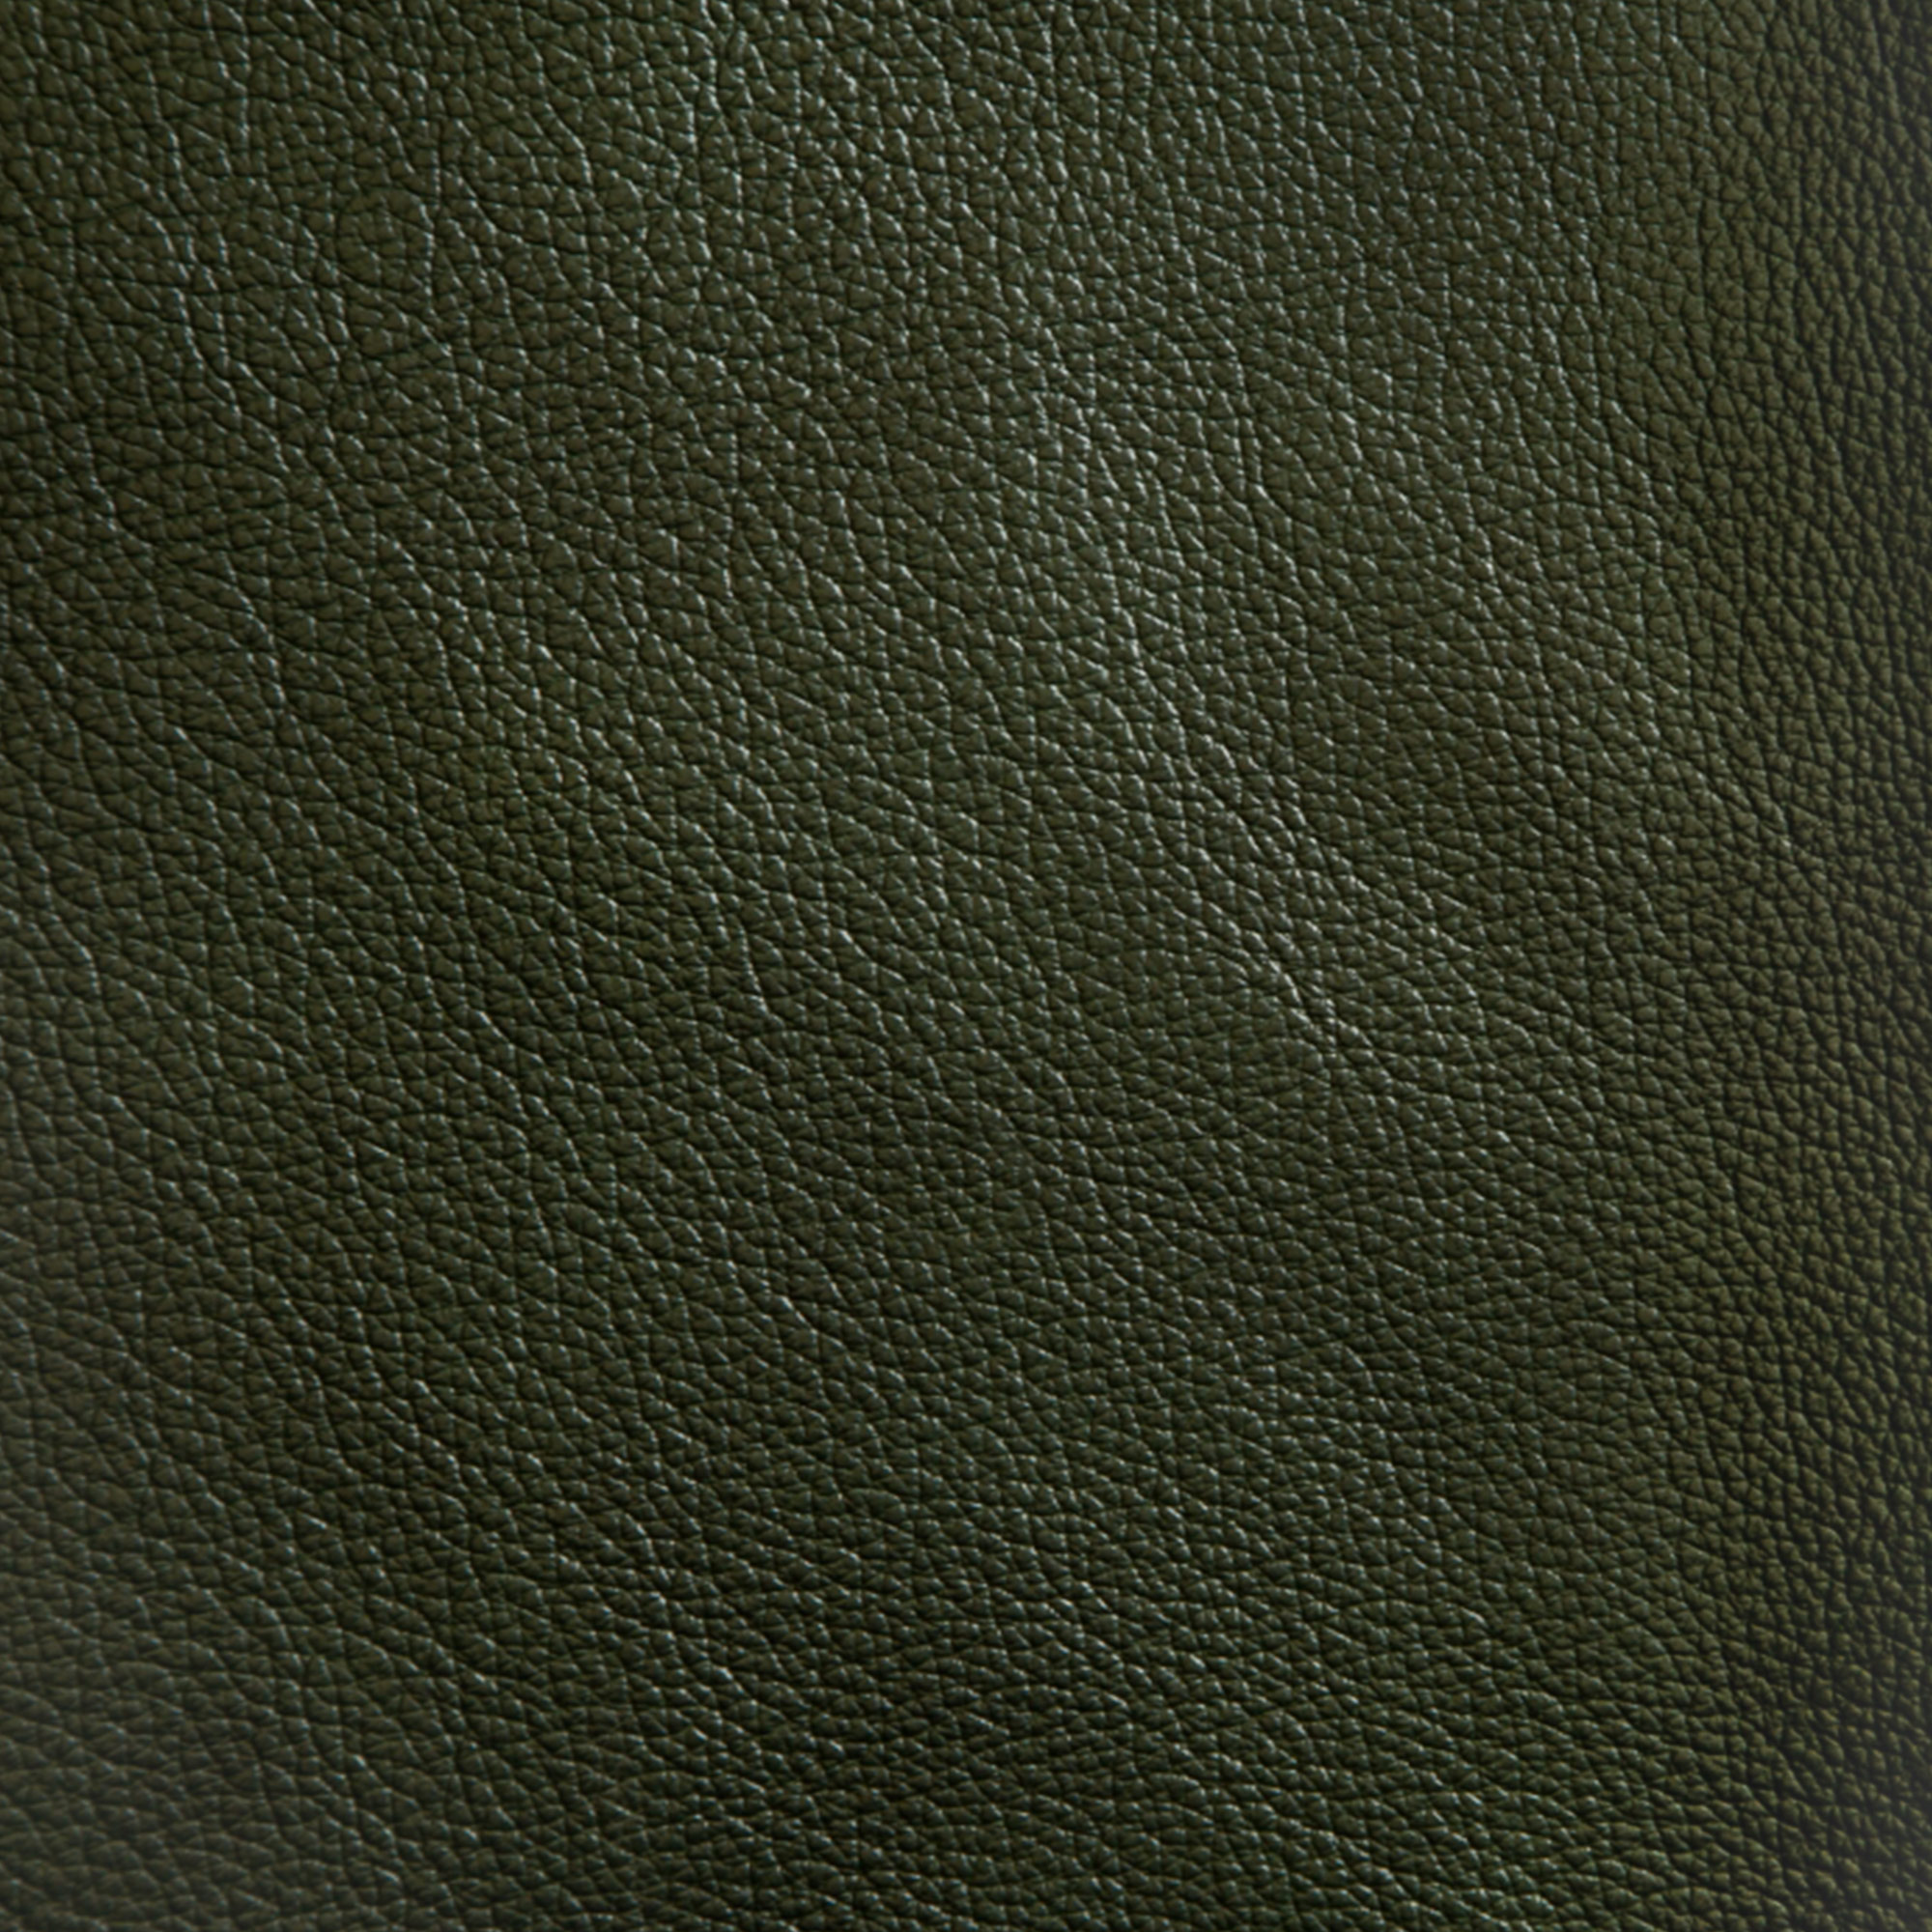 фото Диван фс надия натуральная кожа зеленый реверсивный угол 234x150x88